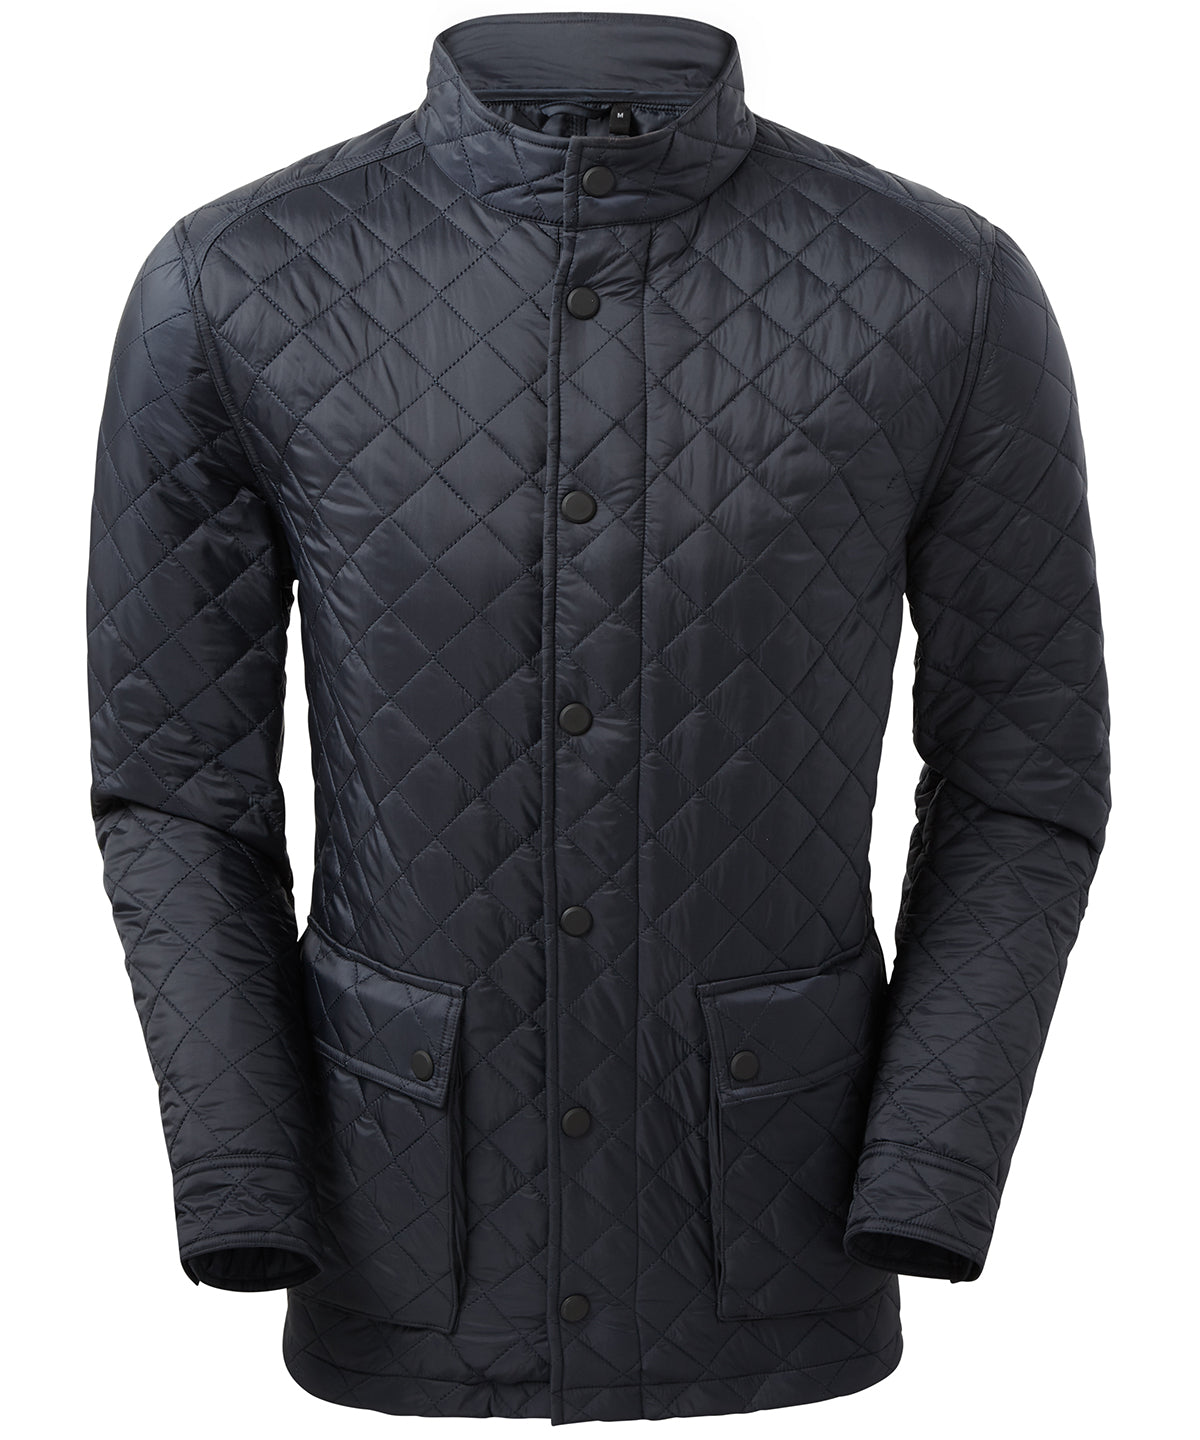 Jakkar - Quartic Quilt Jacket